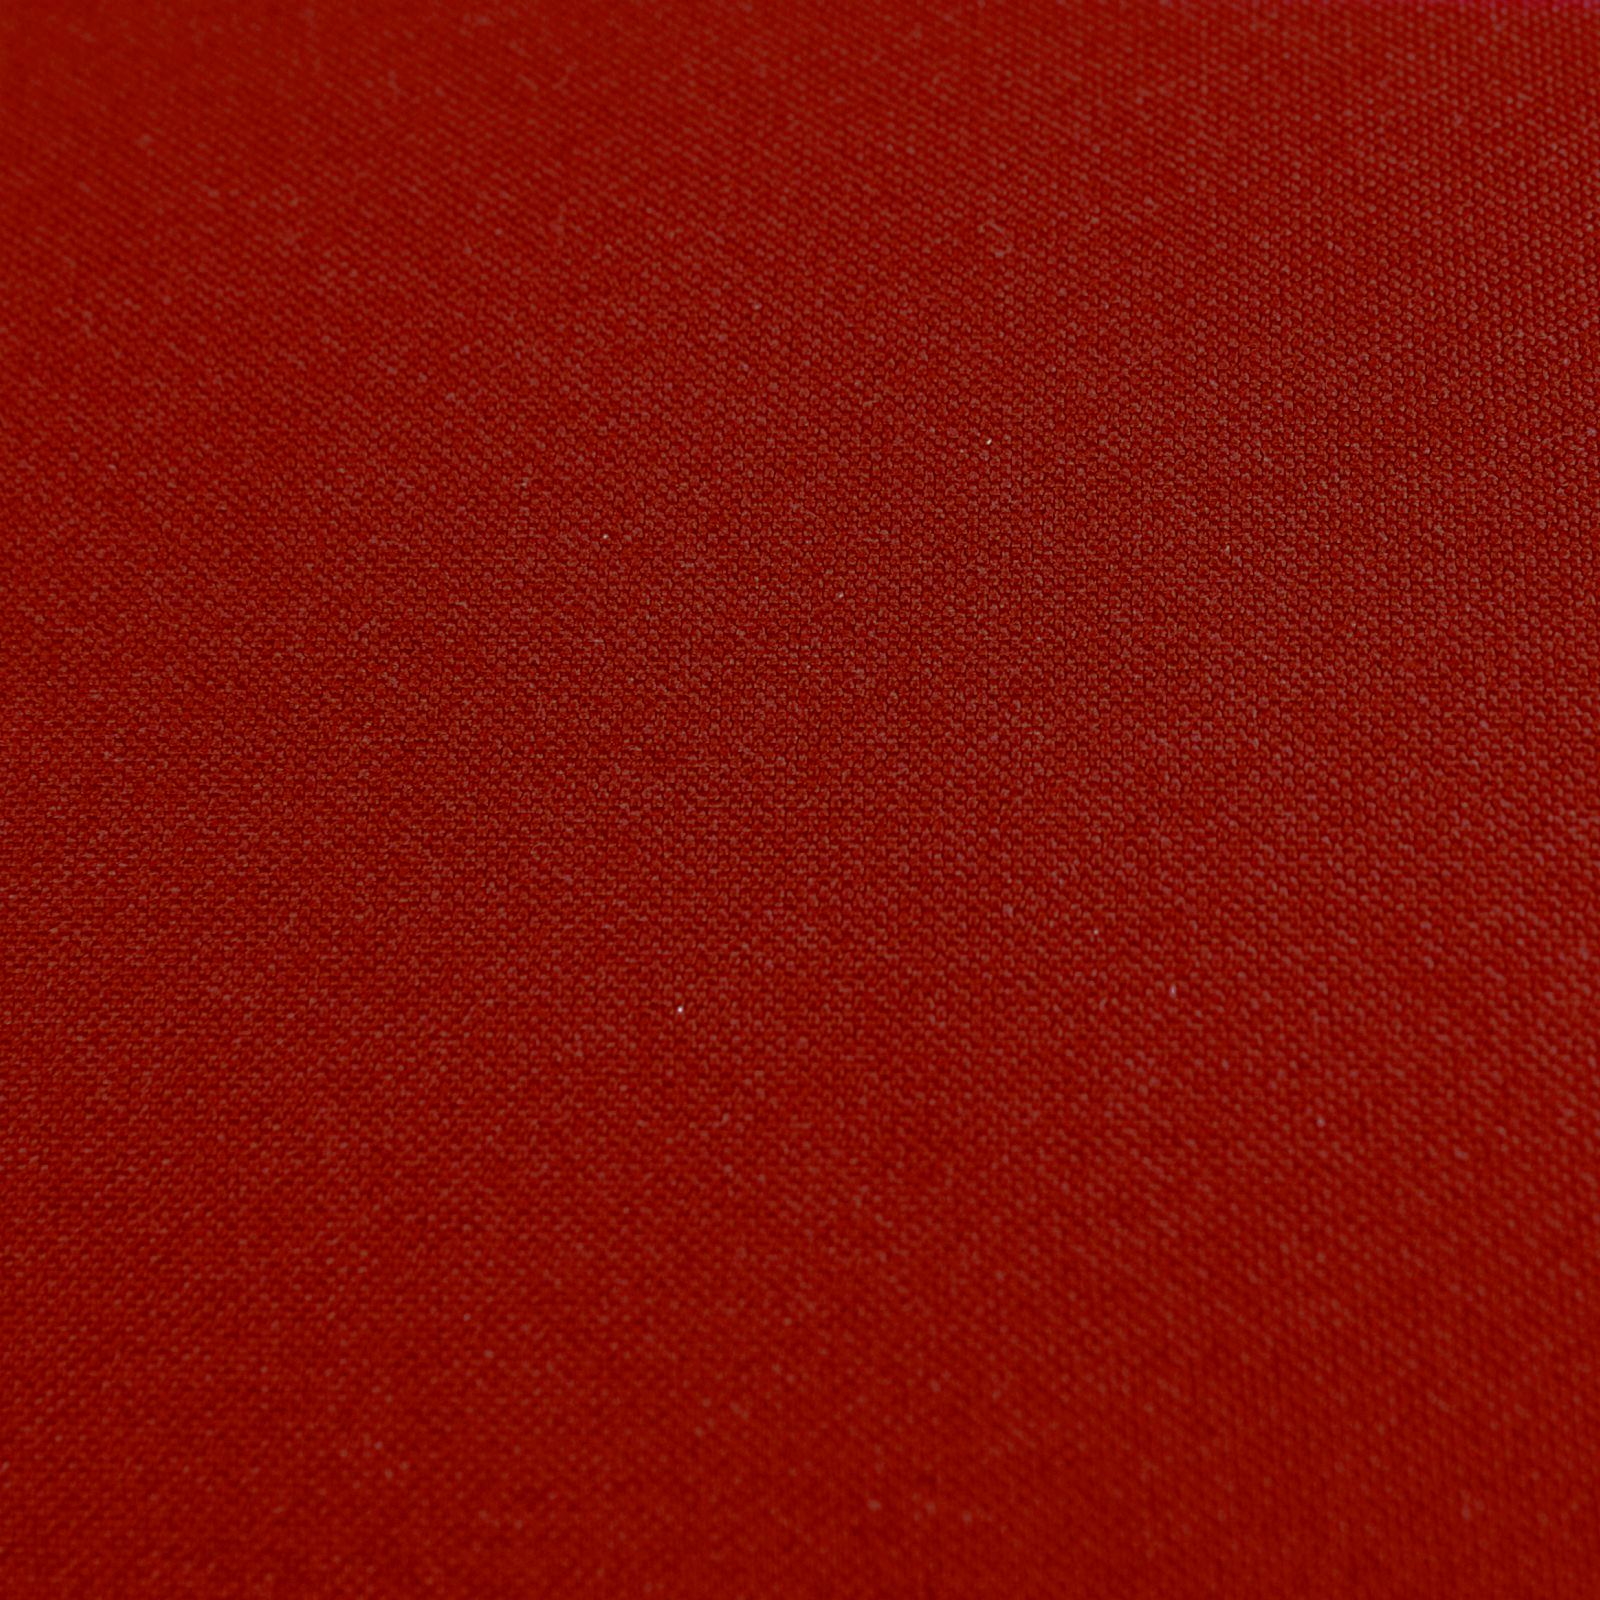 Komplettkissen Polyester-Bordeaux Rot / 50x50 cm